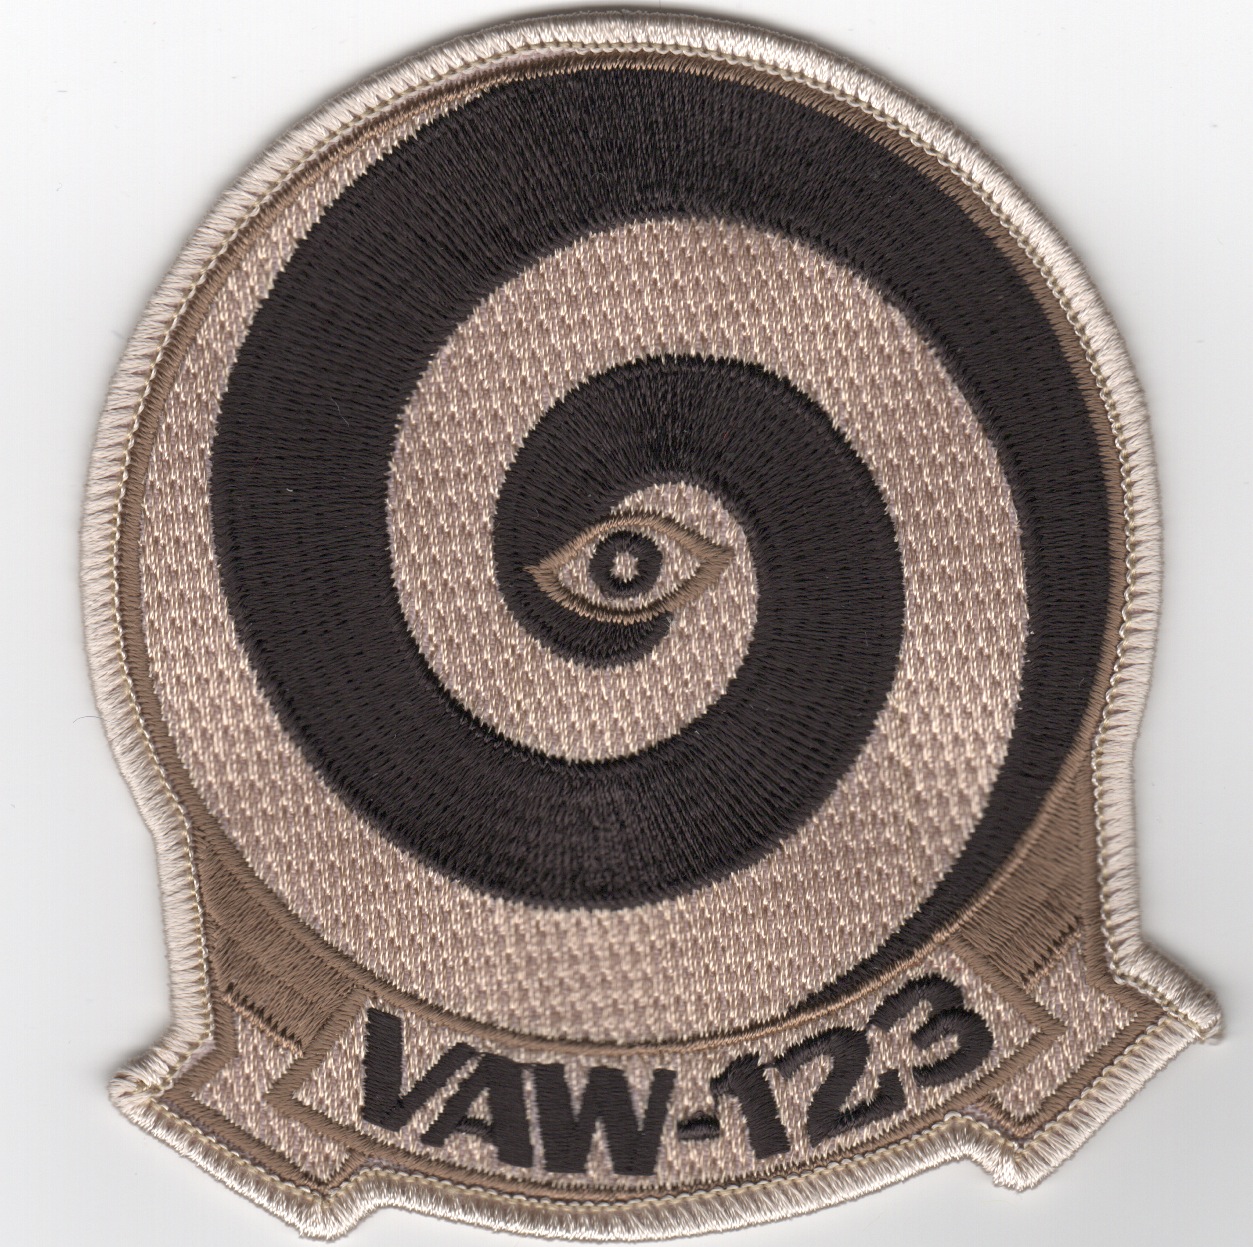 VAW-123 Squadron Patch (Des)